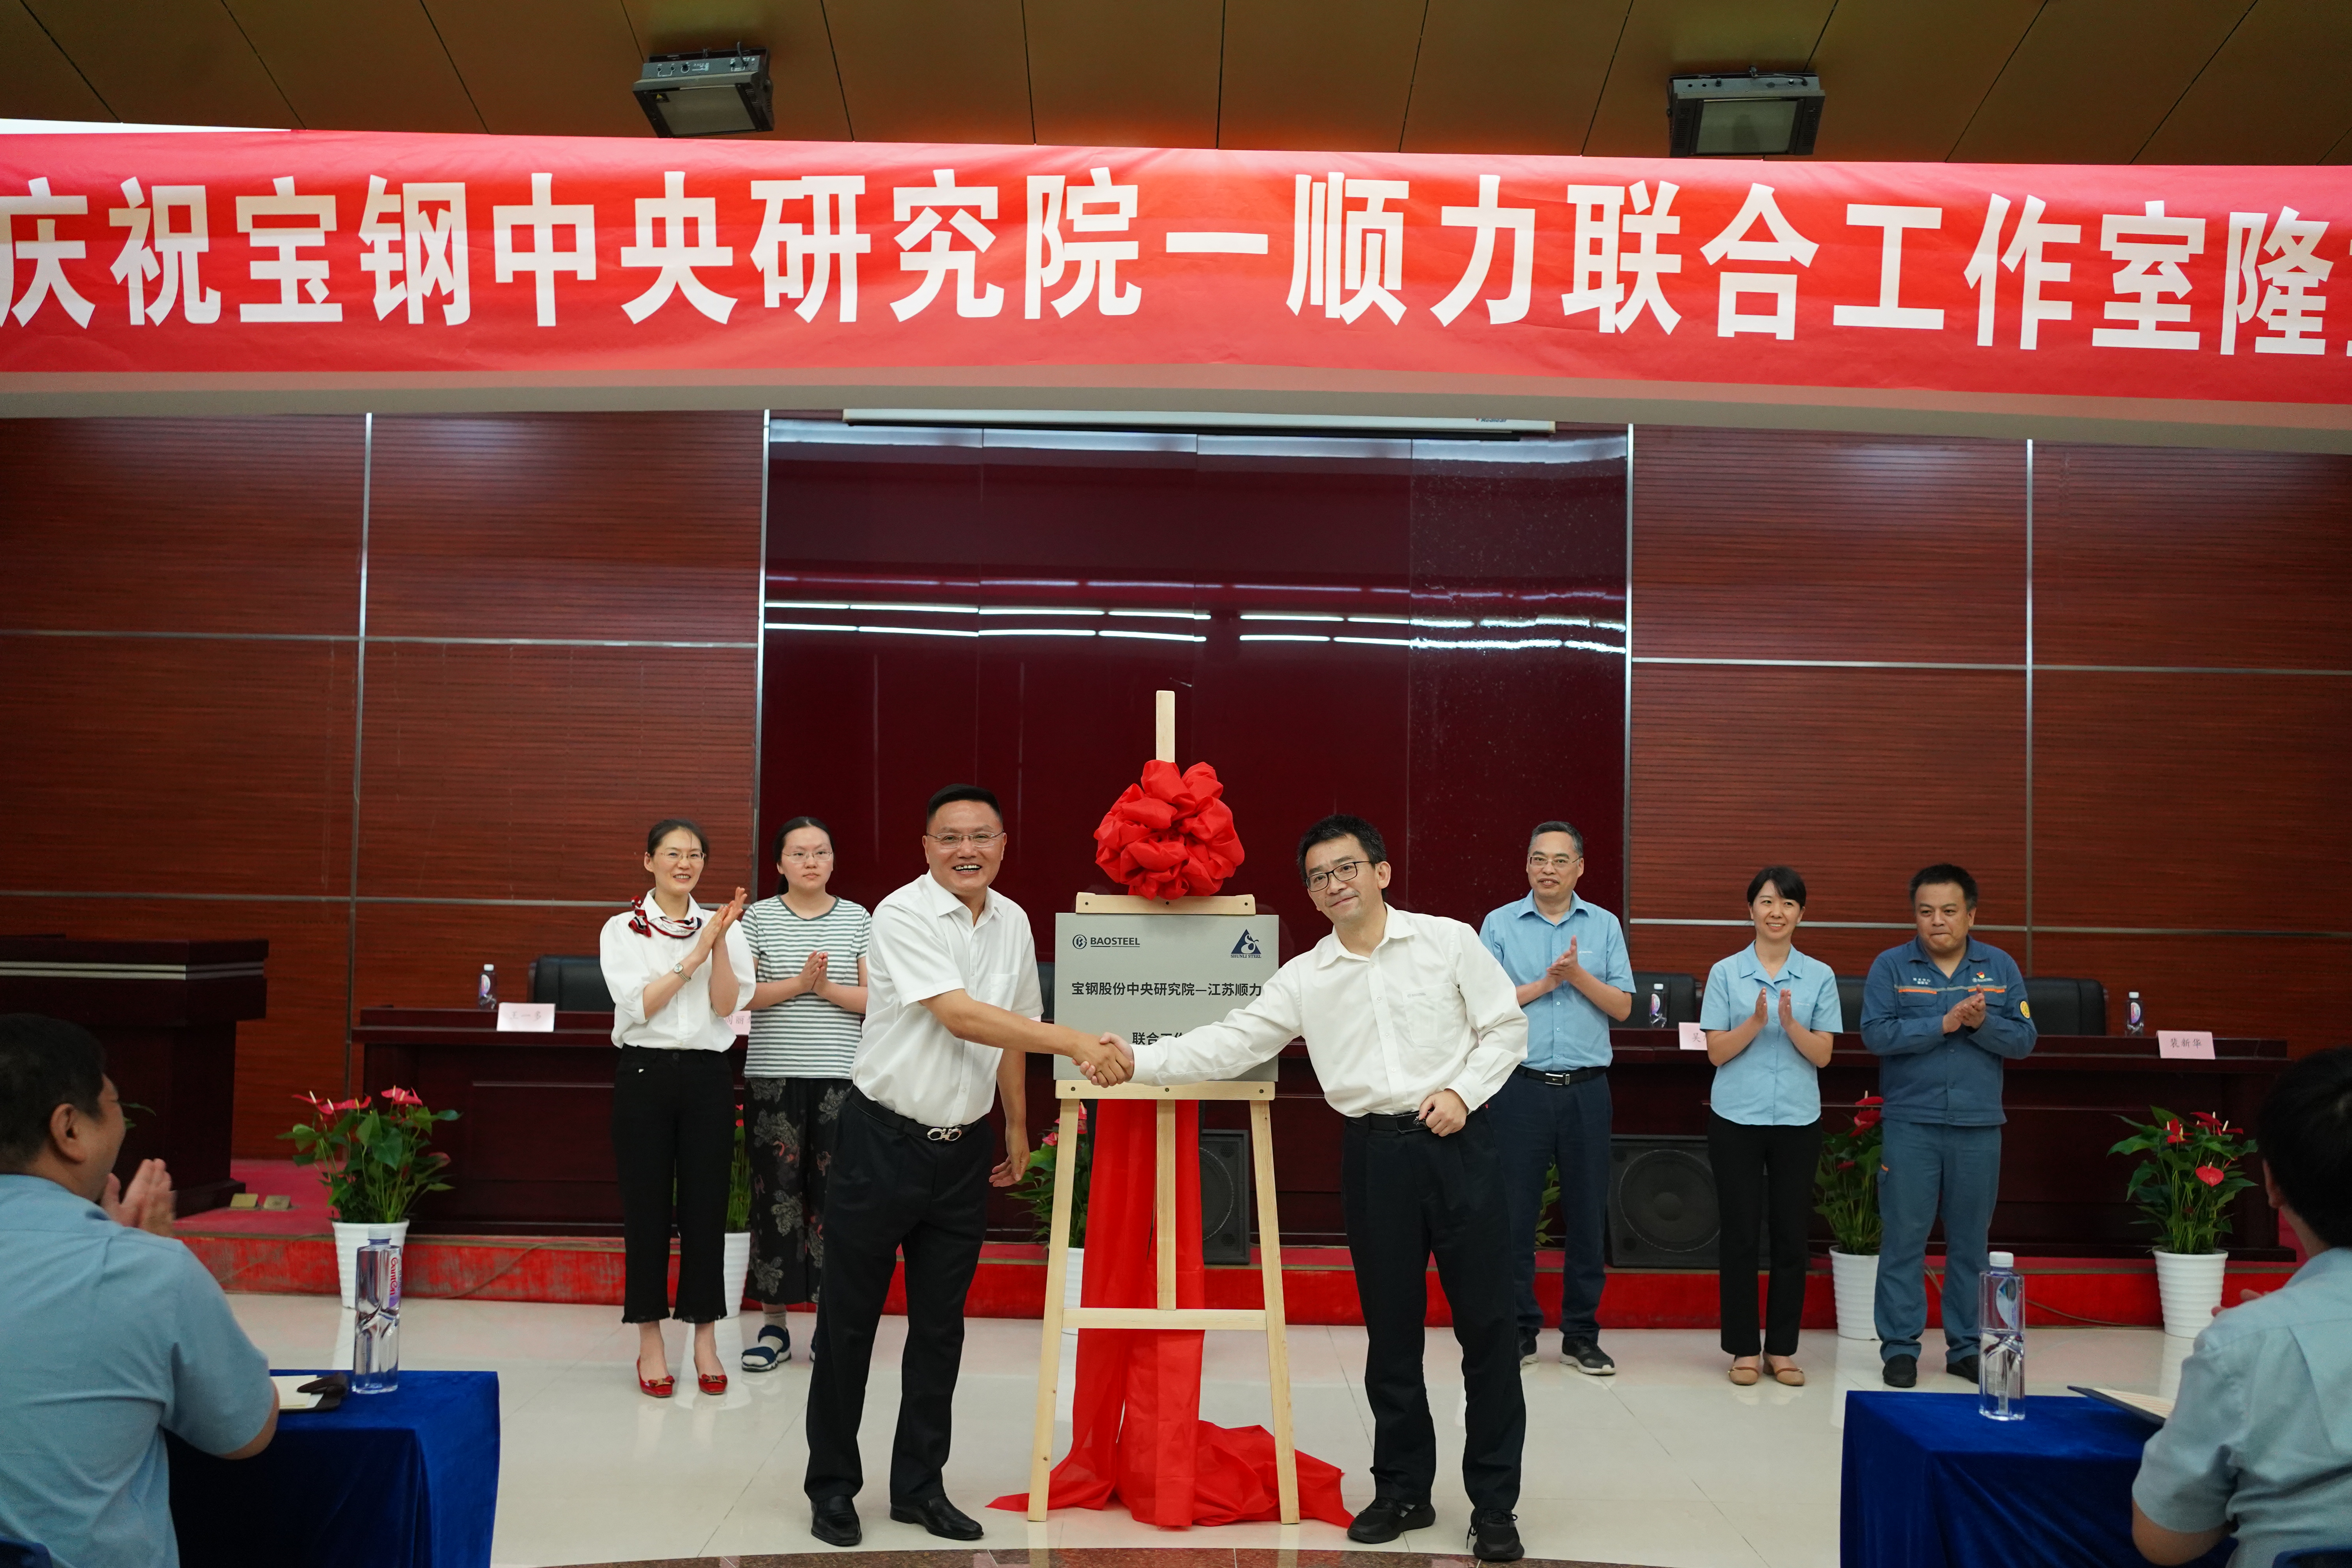 Baowu Group Baosteel Central Research Institute-Shunli Joint Studio è stato rivelato in Gruppo Steel SHUNLI